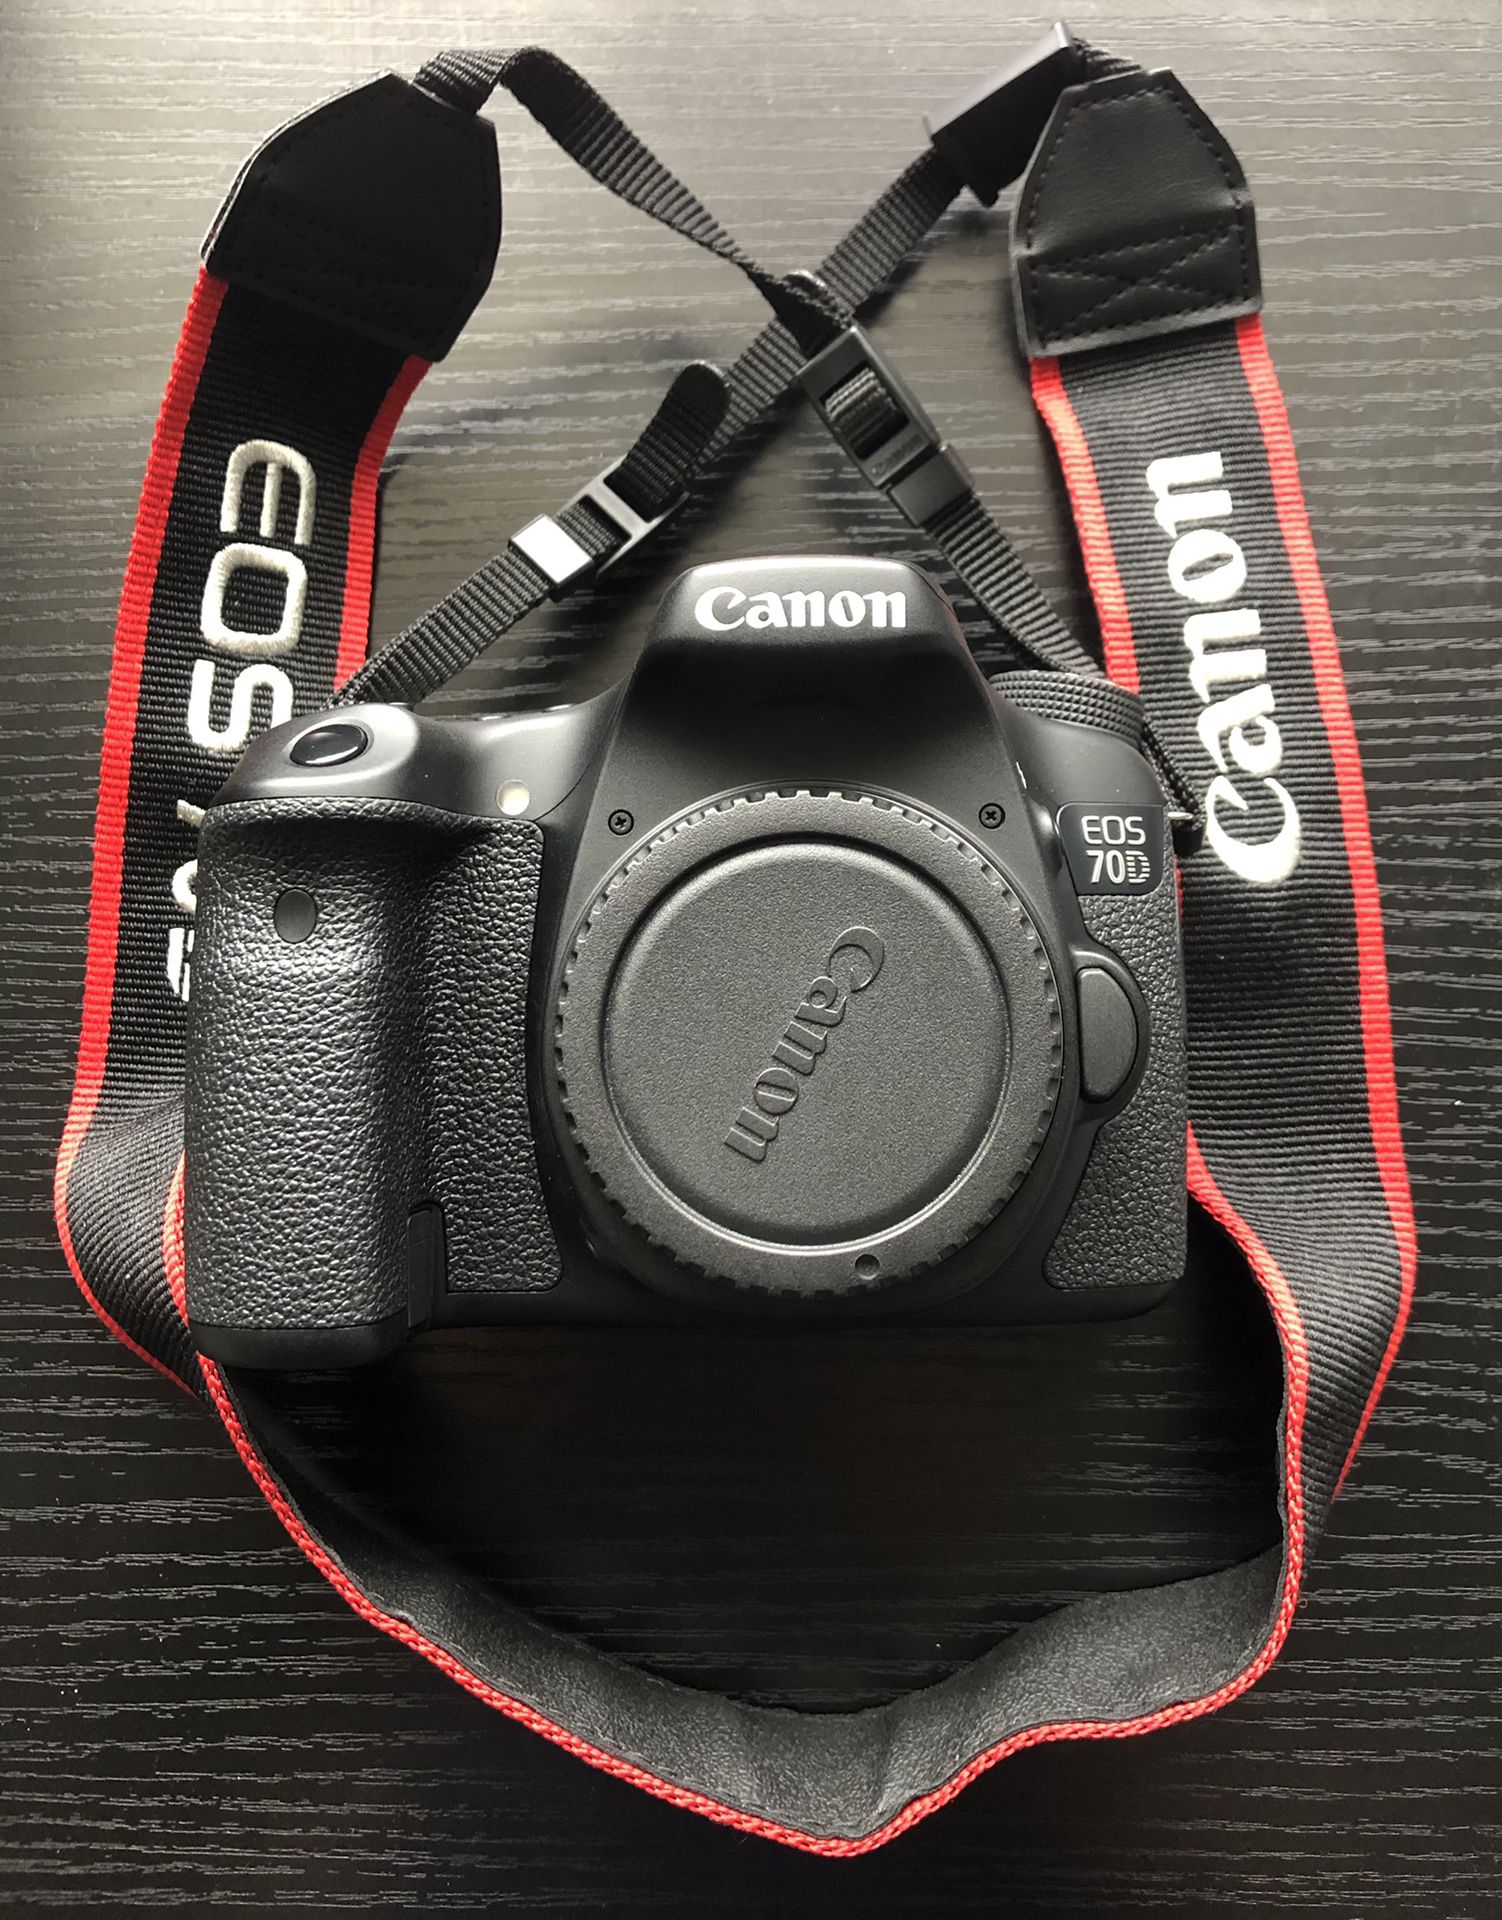 Canon EOS 70D Digital SLR Camera Full Kit